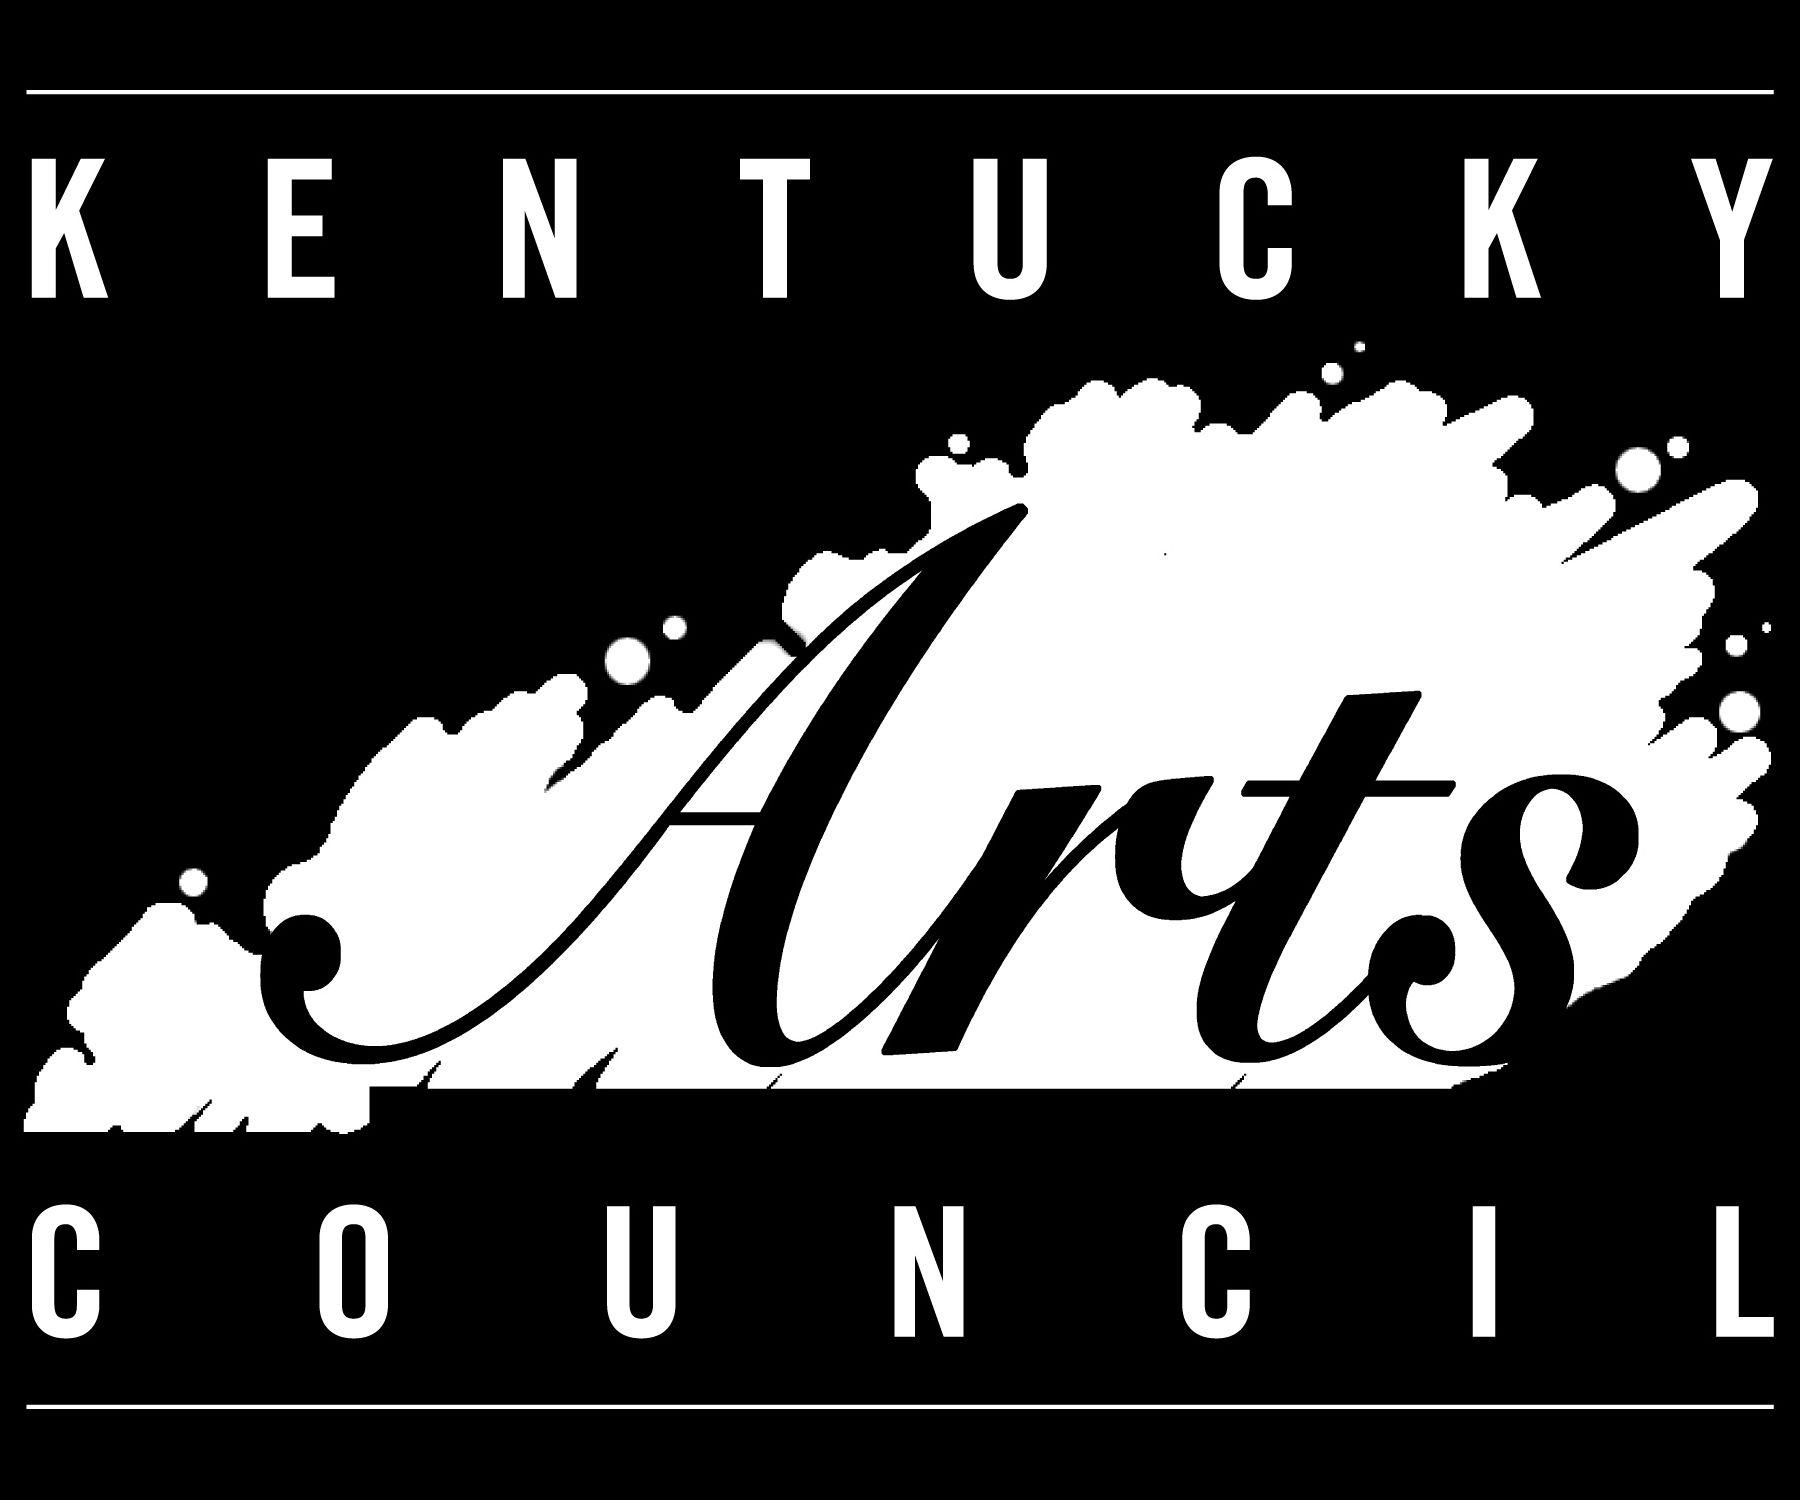 KY Logo - Kentucky Arts Council: Credit and Logos